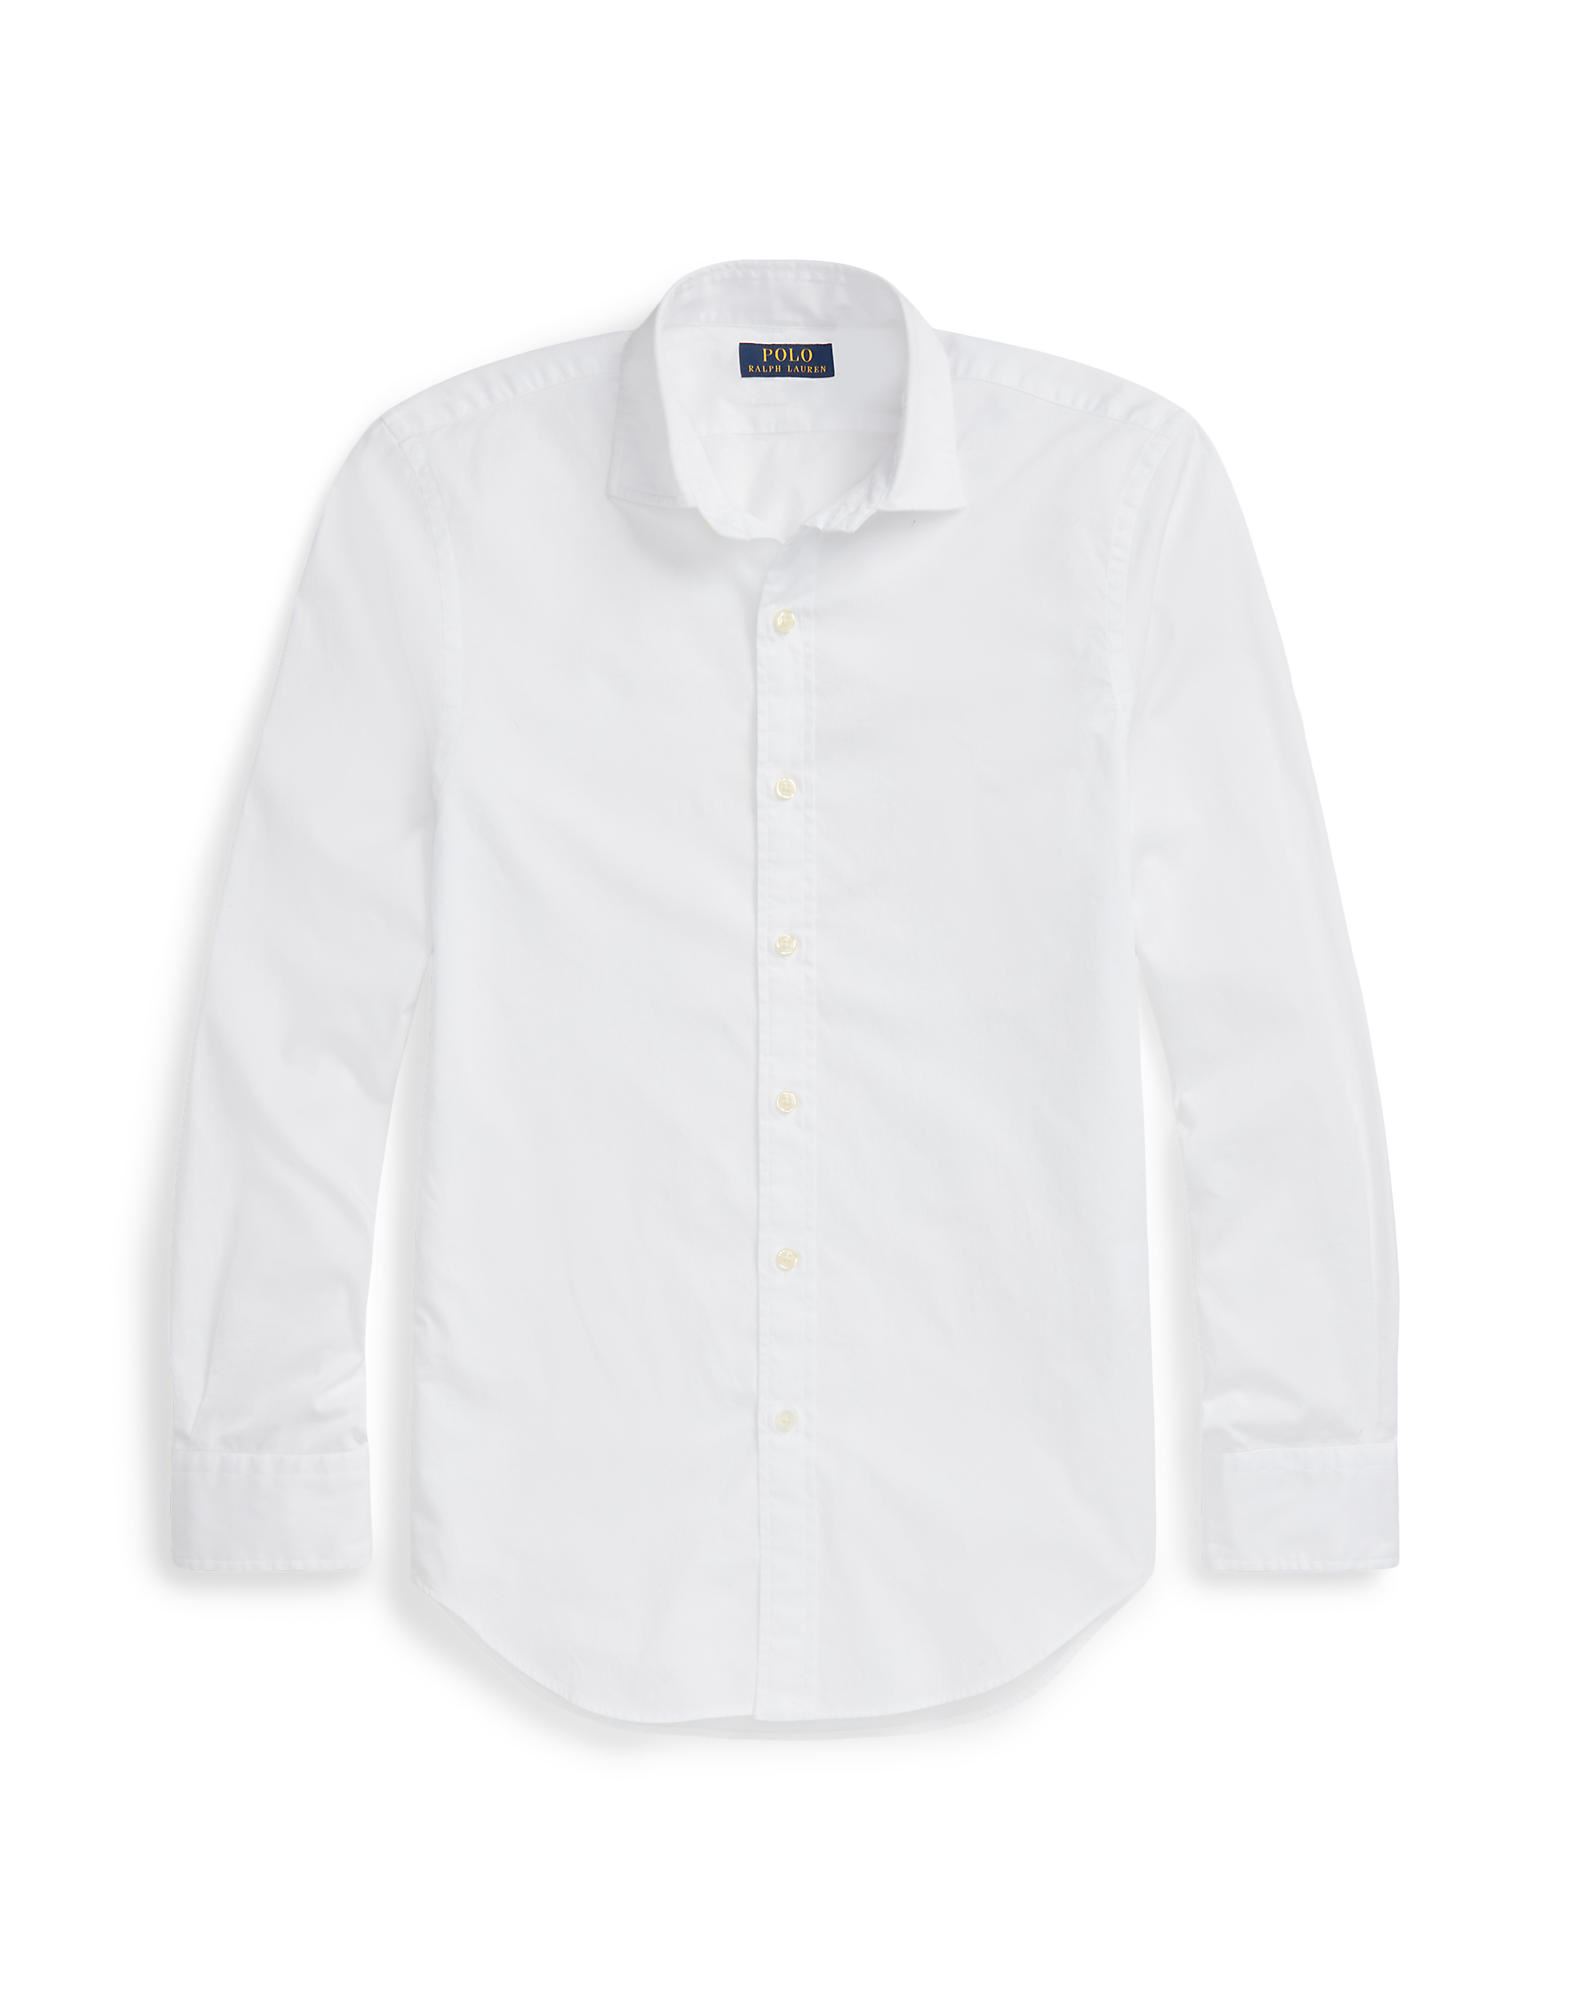 コットン メンズシャツ・ワイシャツ | 通販・人気ランキング - 価格.com